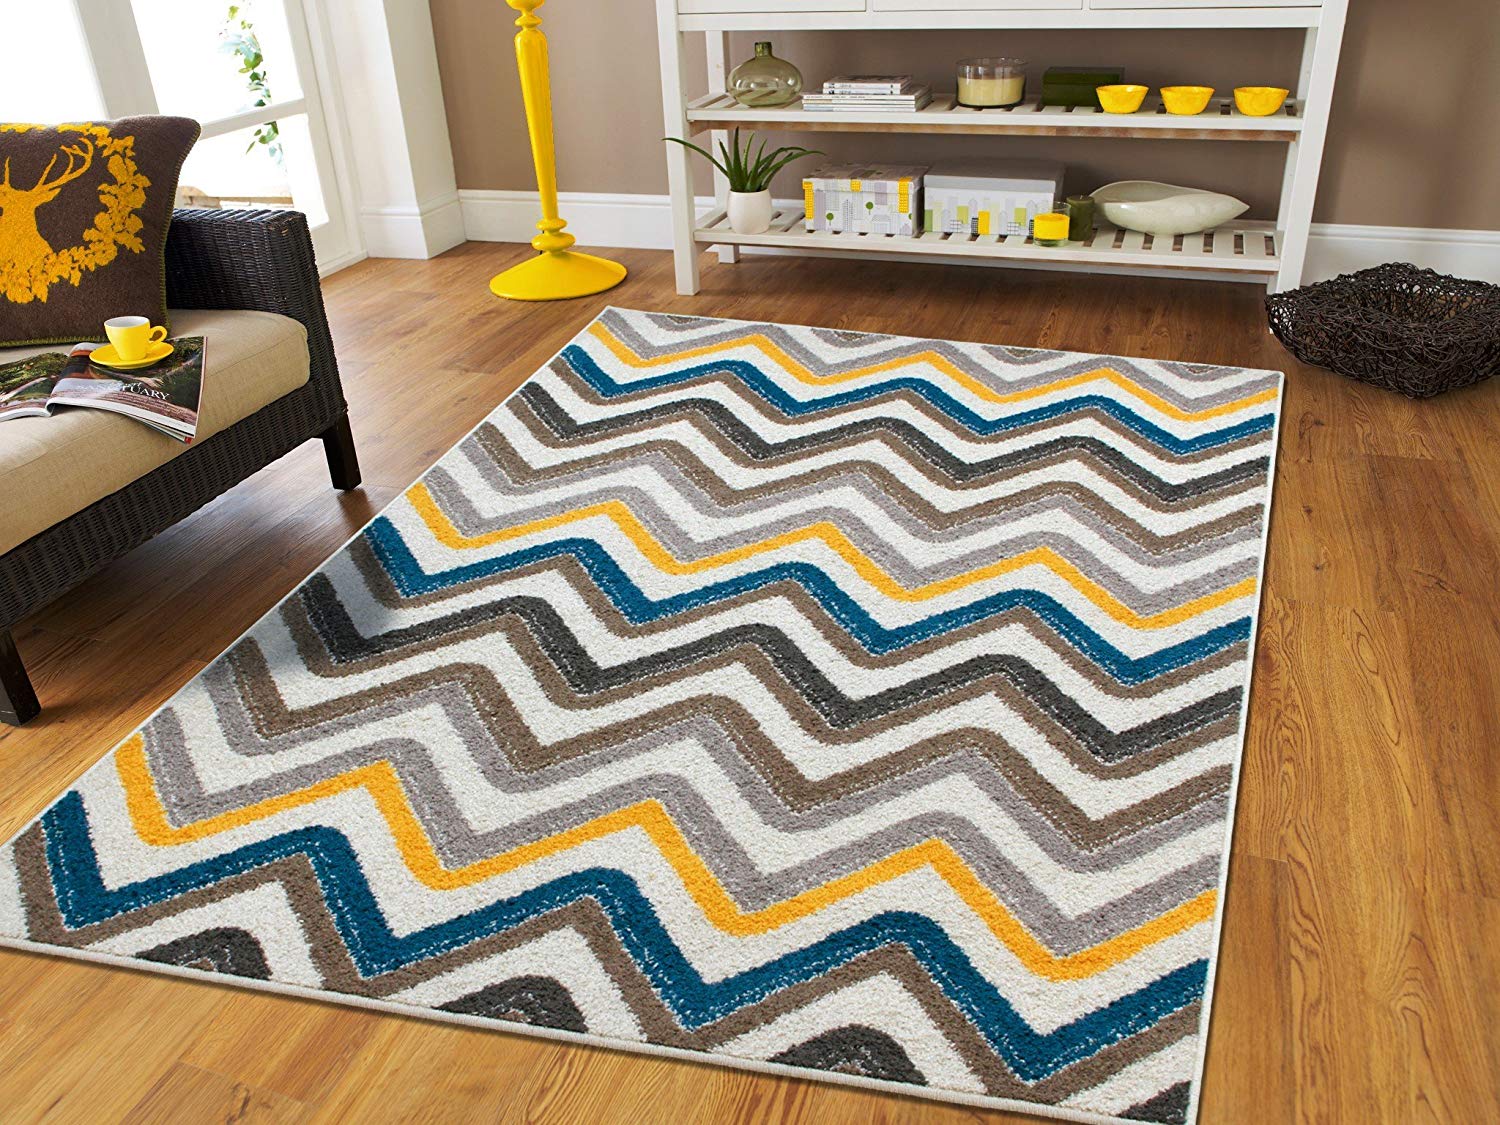 best rugs amazon.com: new fashion zigzag style large area rugs 8x11 clearance under  100 NGUBGPM